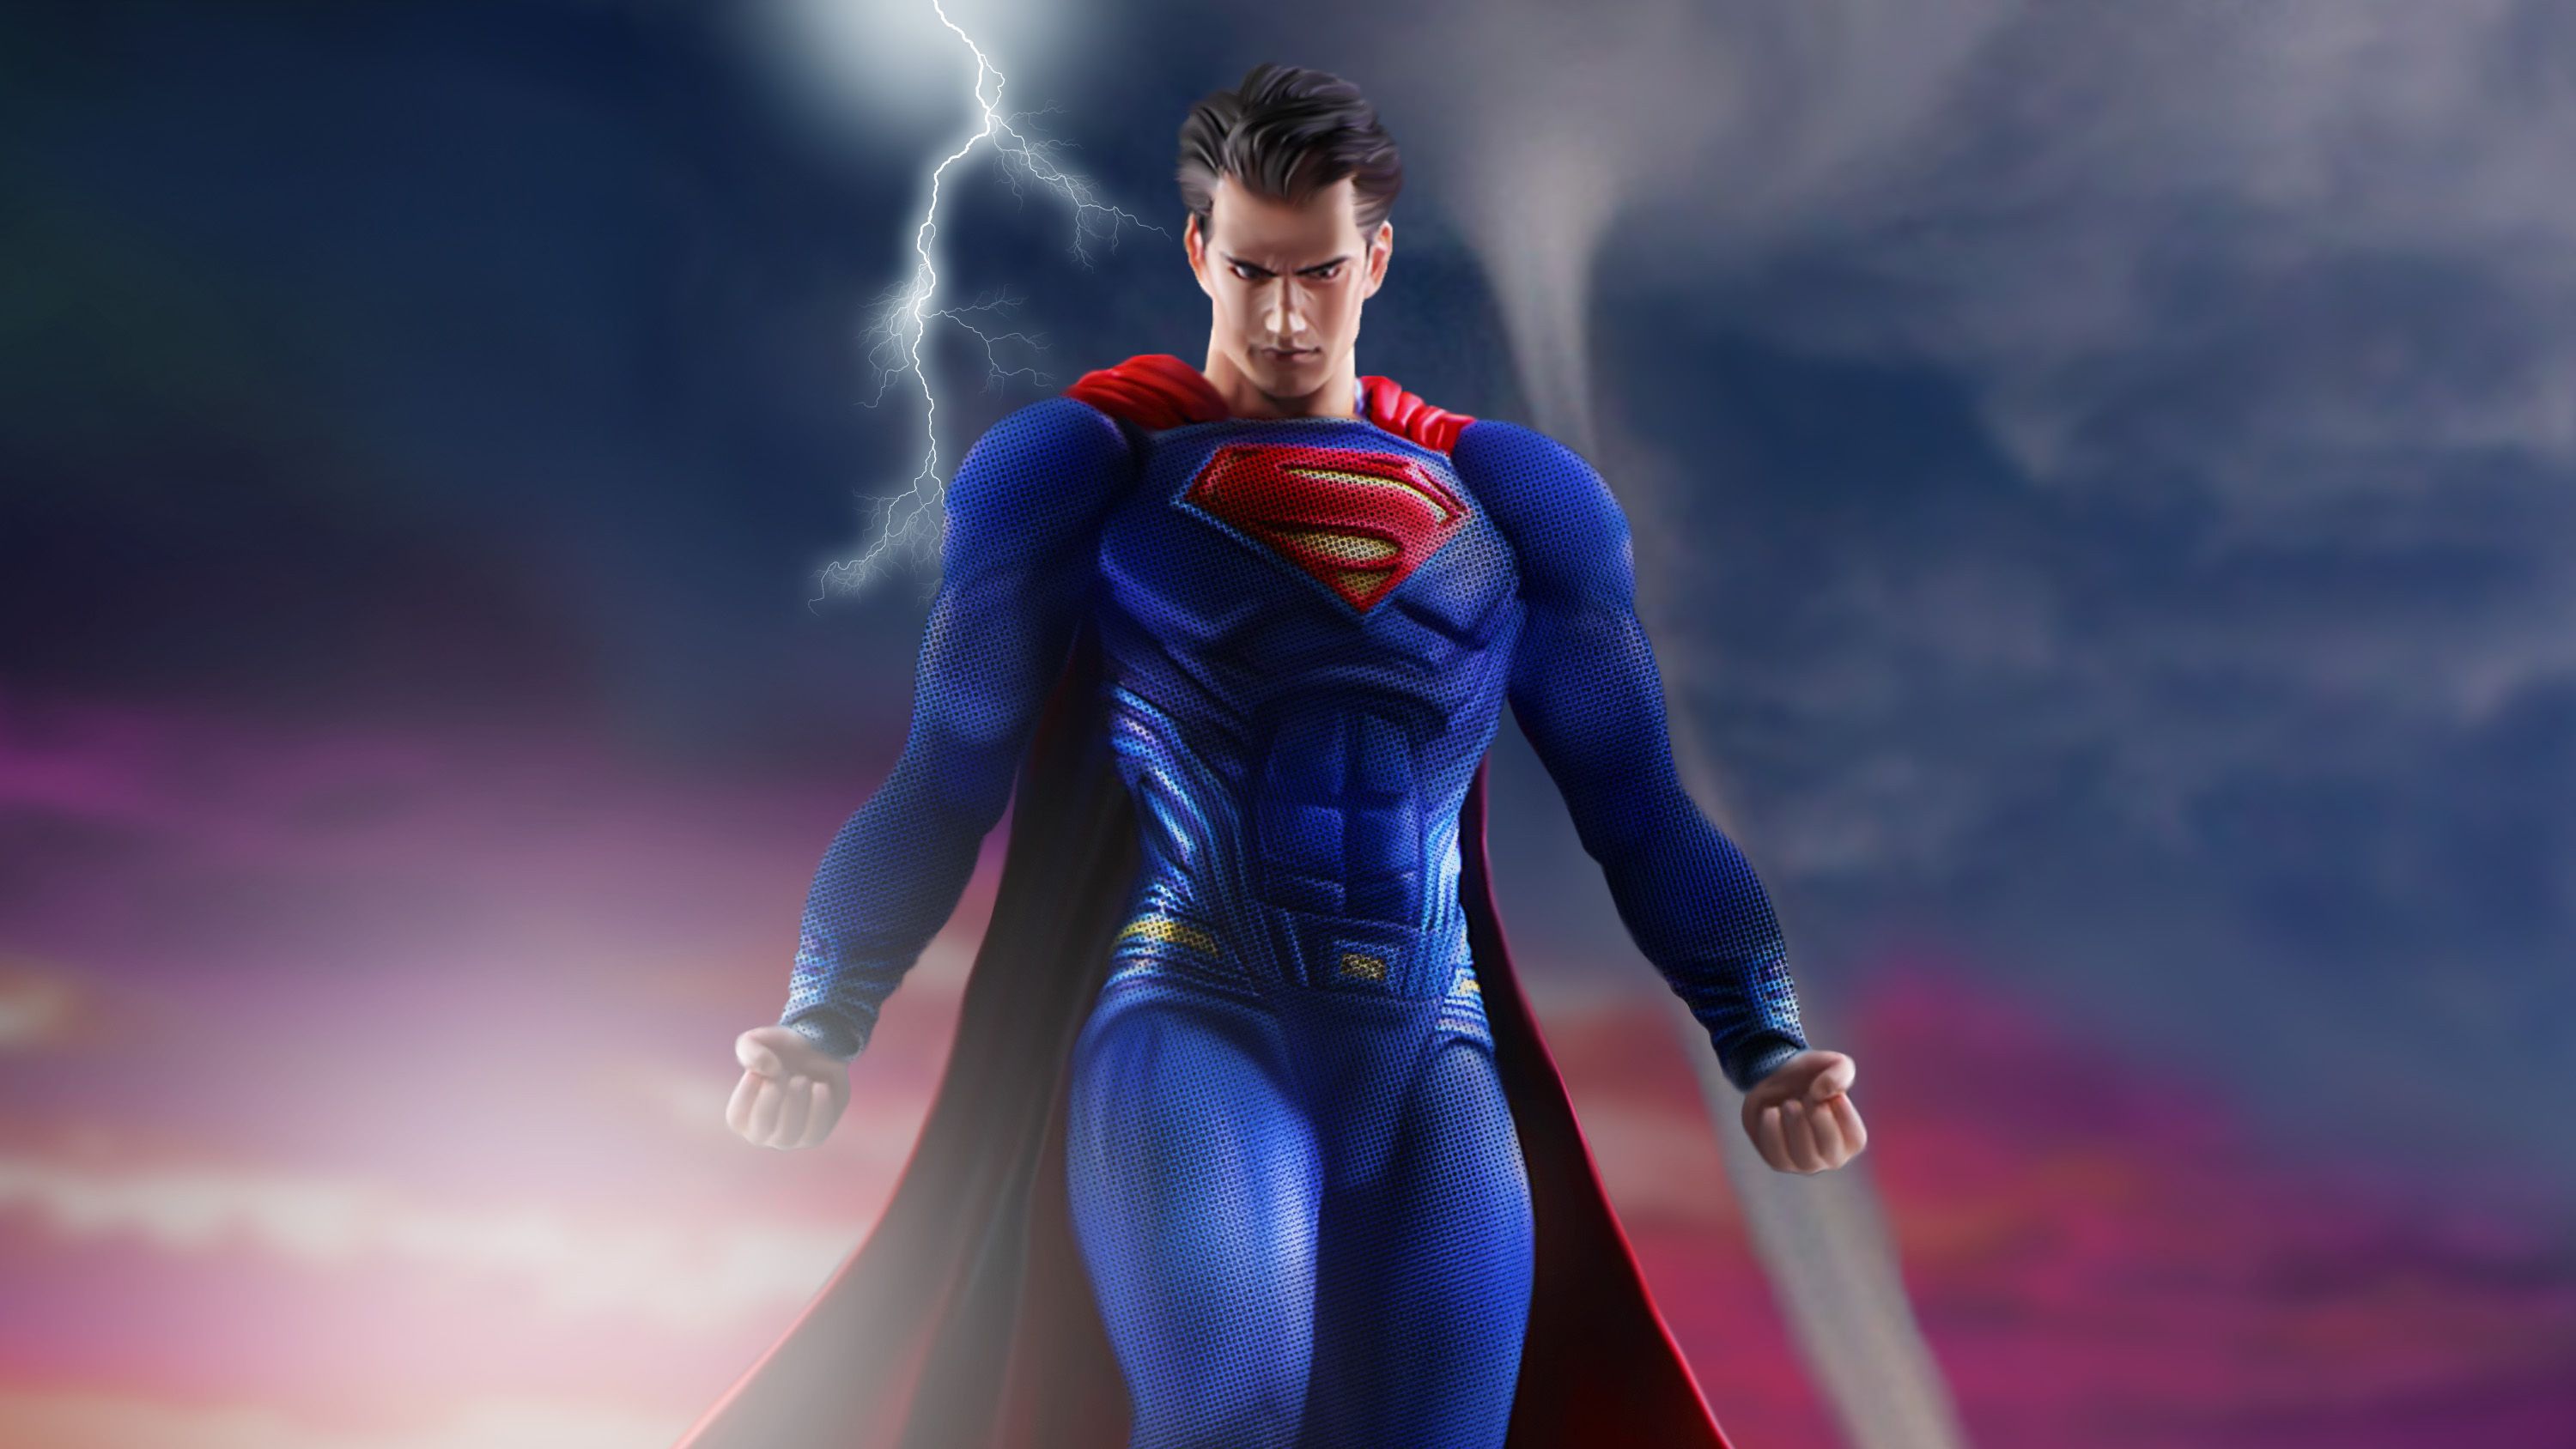 Superman Flying, HD Superheroes, 4k Wallpaper, Image